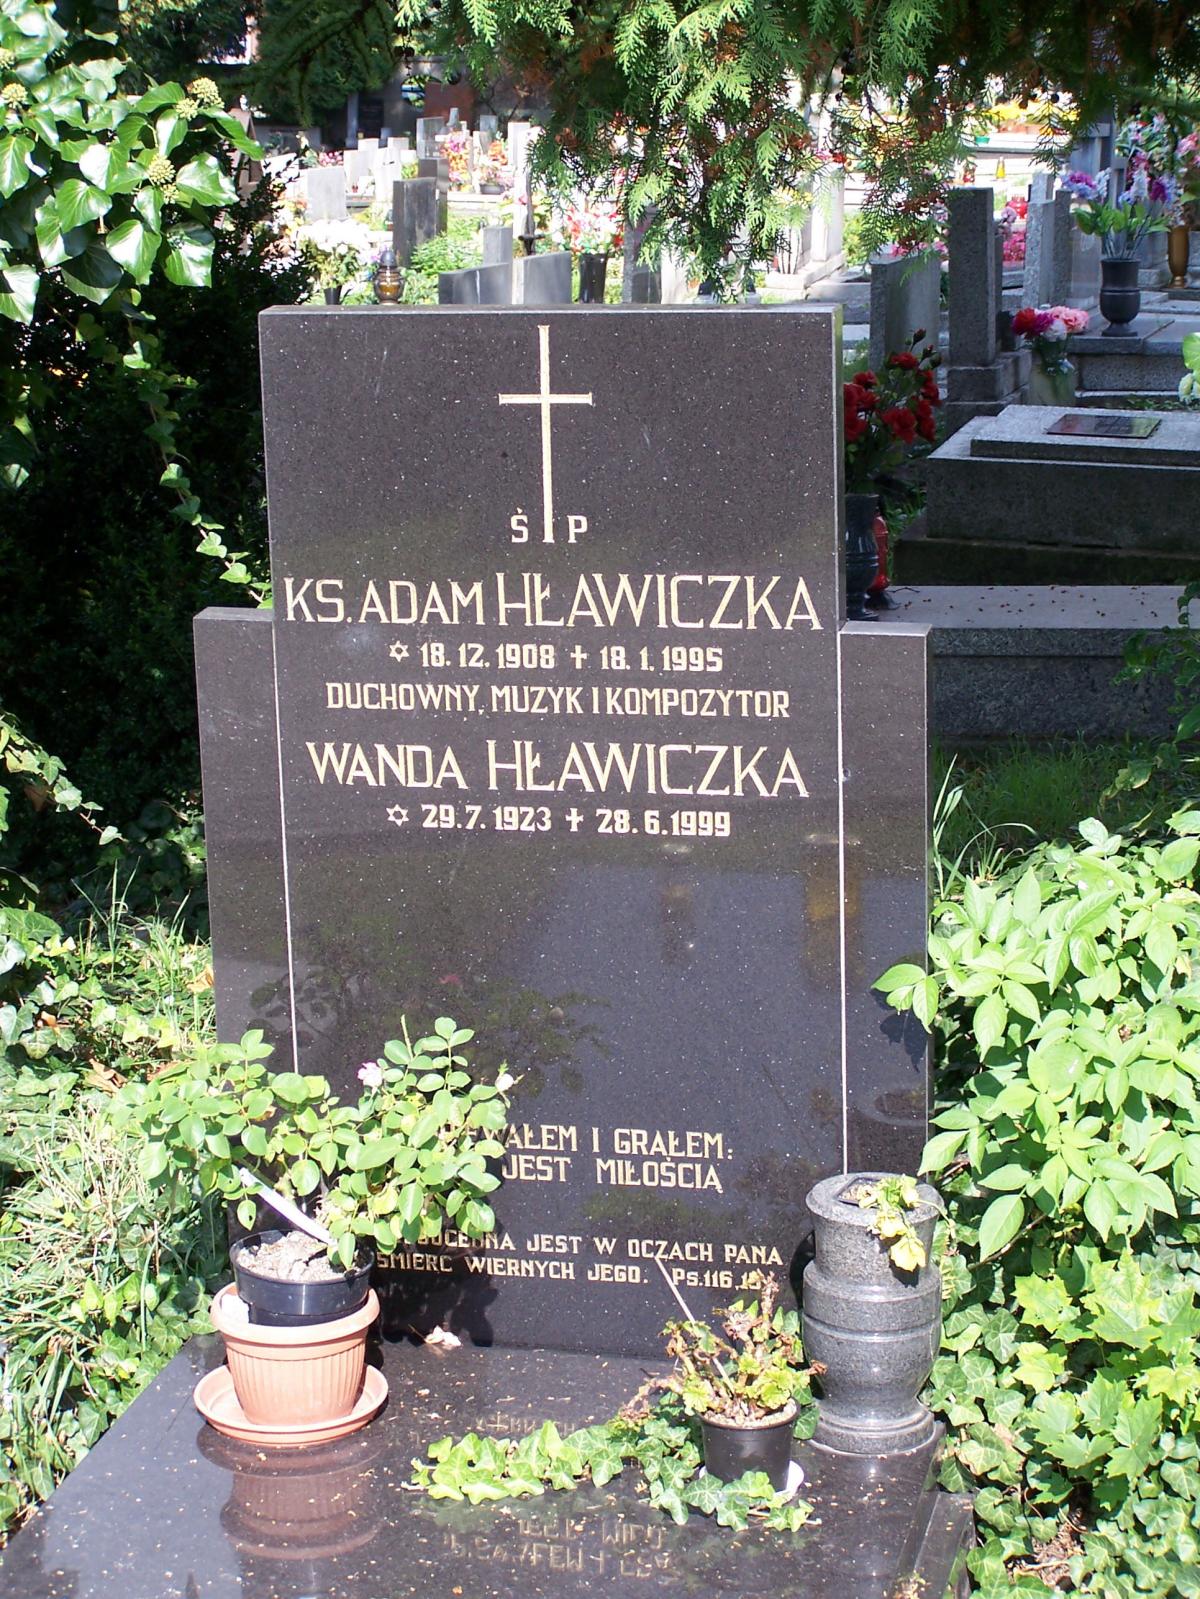 Wikipedia, 2009 in Cieszyn, Graves in Cieszyn, Lutheran Cemetery in Cieszyn, Self-published work